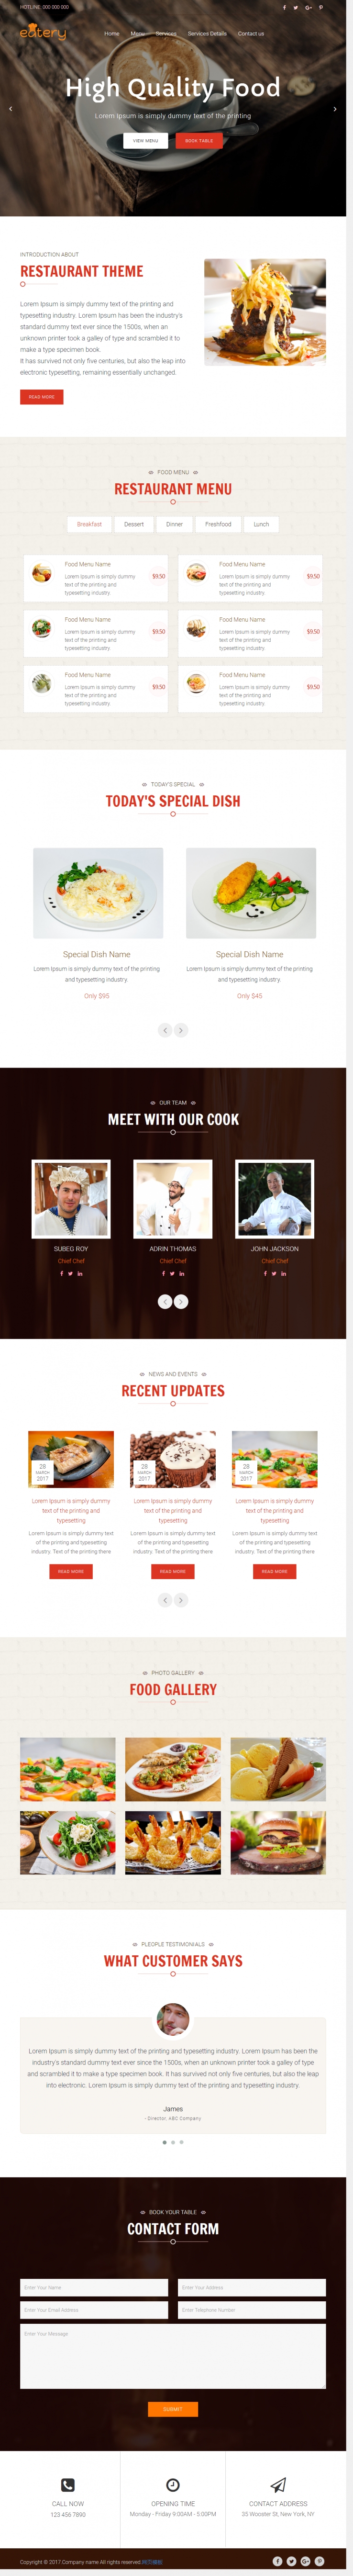 红色宽屏风格的响应式餐厅网站模板下载